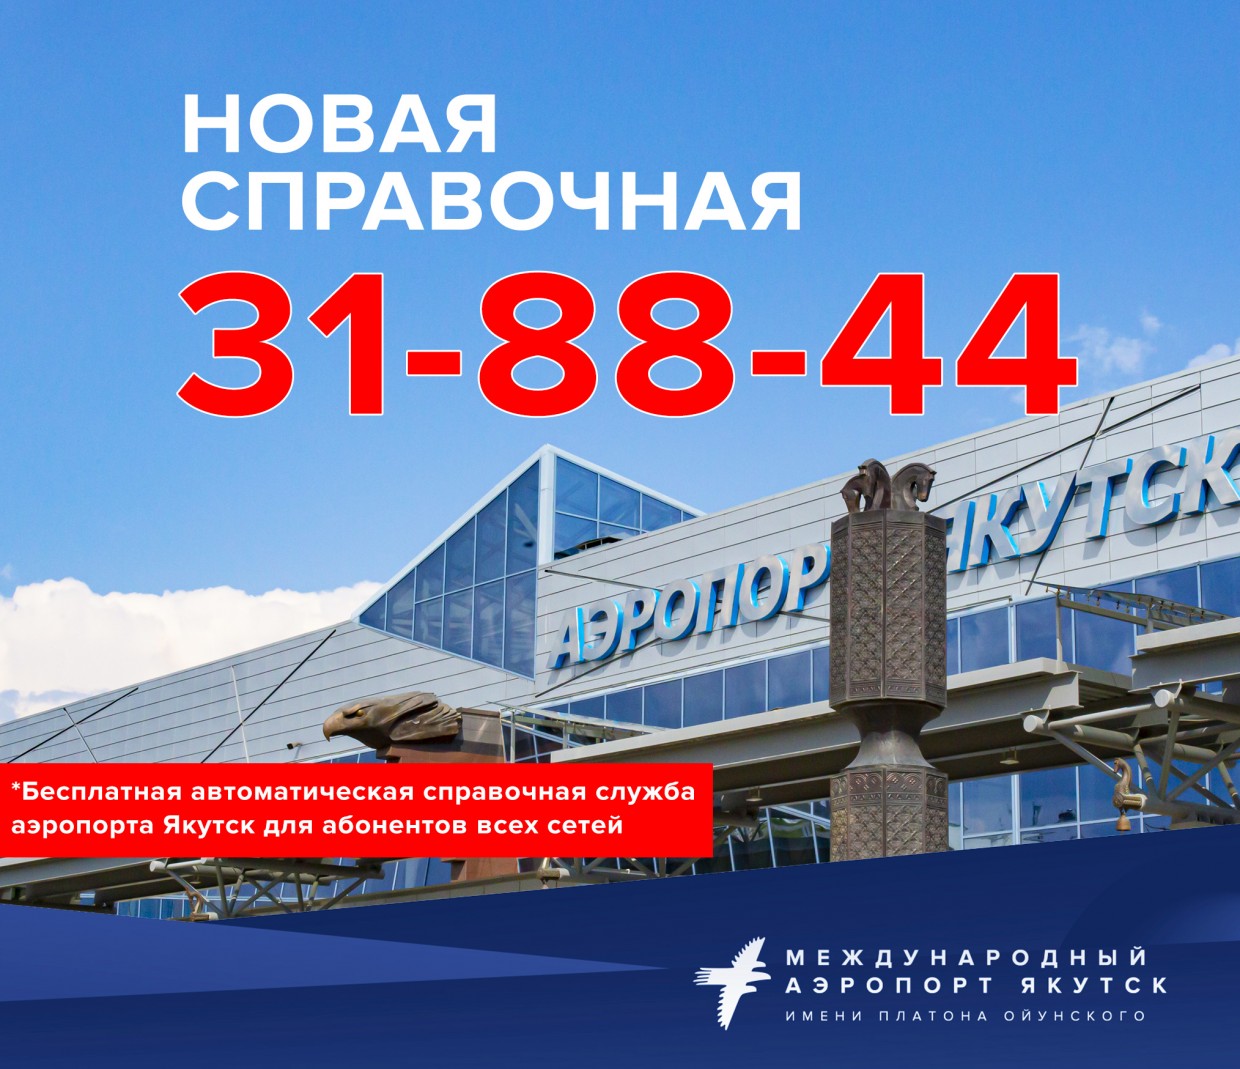 У аэропорта "Якутск" - новая бесплатная справочная